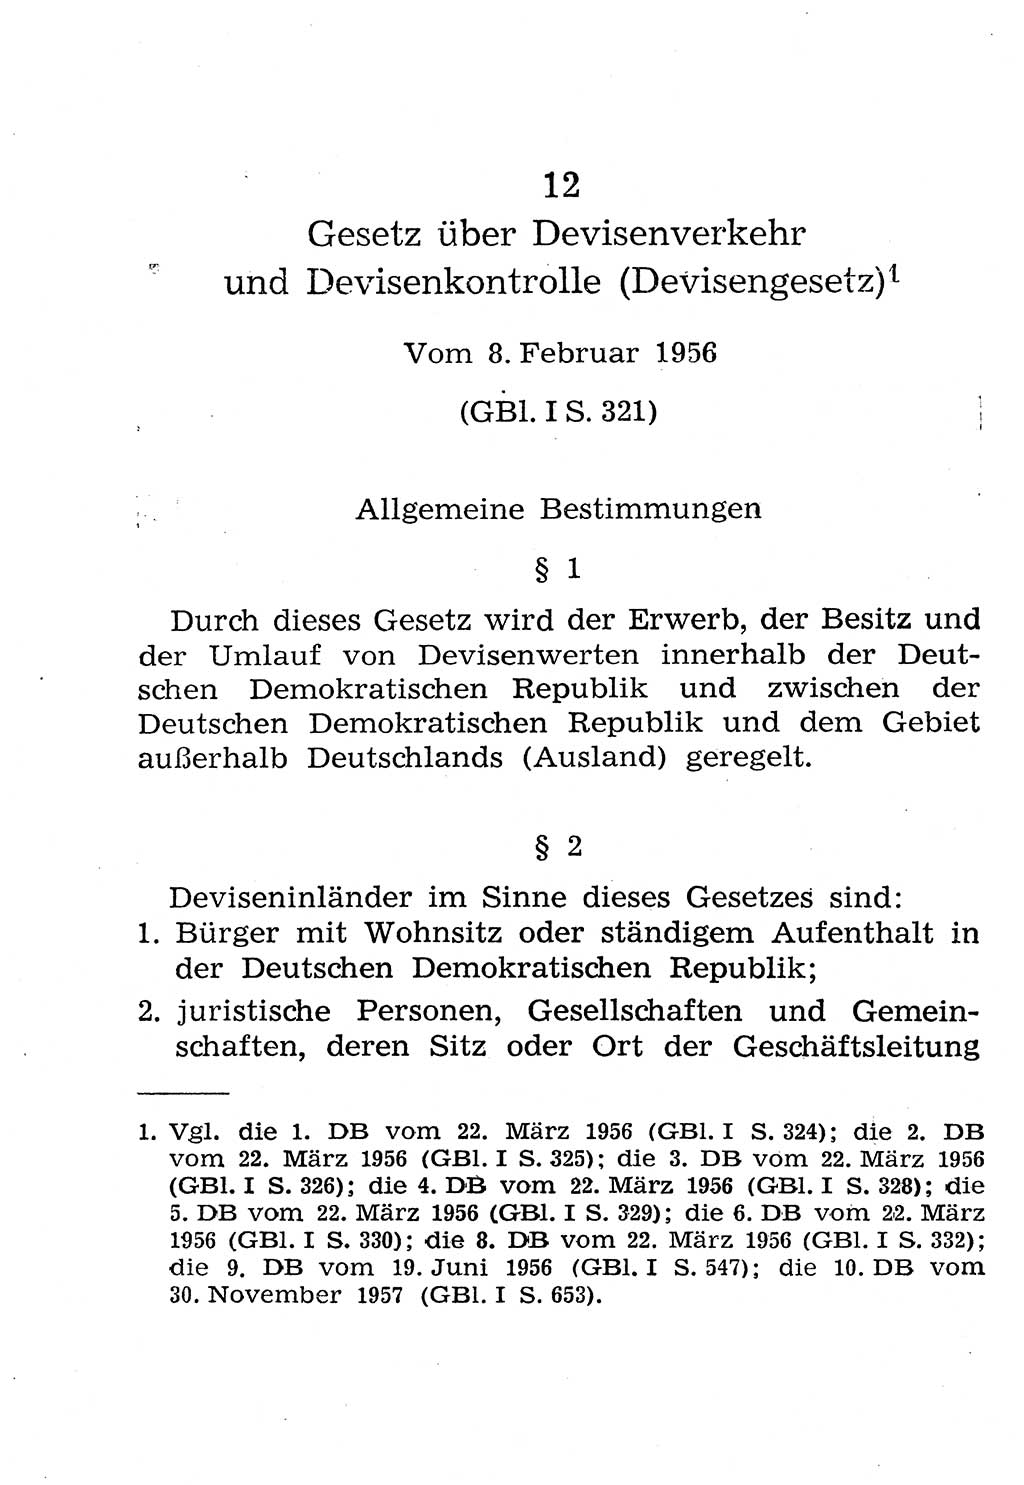 Strafgesetzbuch (StGB) und andere Strafgesetze [Deutsche Demokratische Republik (DDR)] 1958, Seite 280 (StGB Strafges. DDR 1958, S. 280)